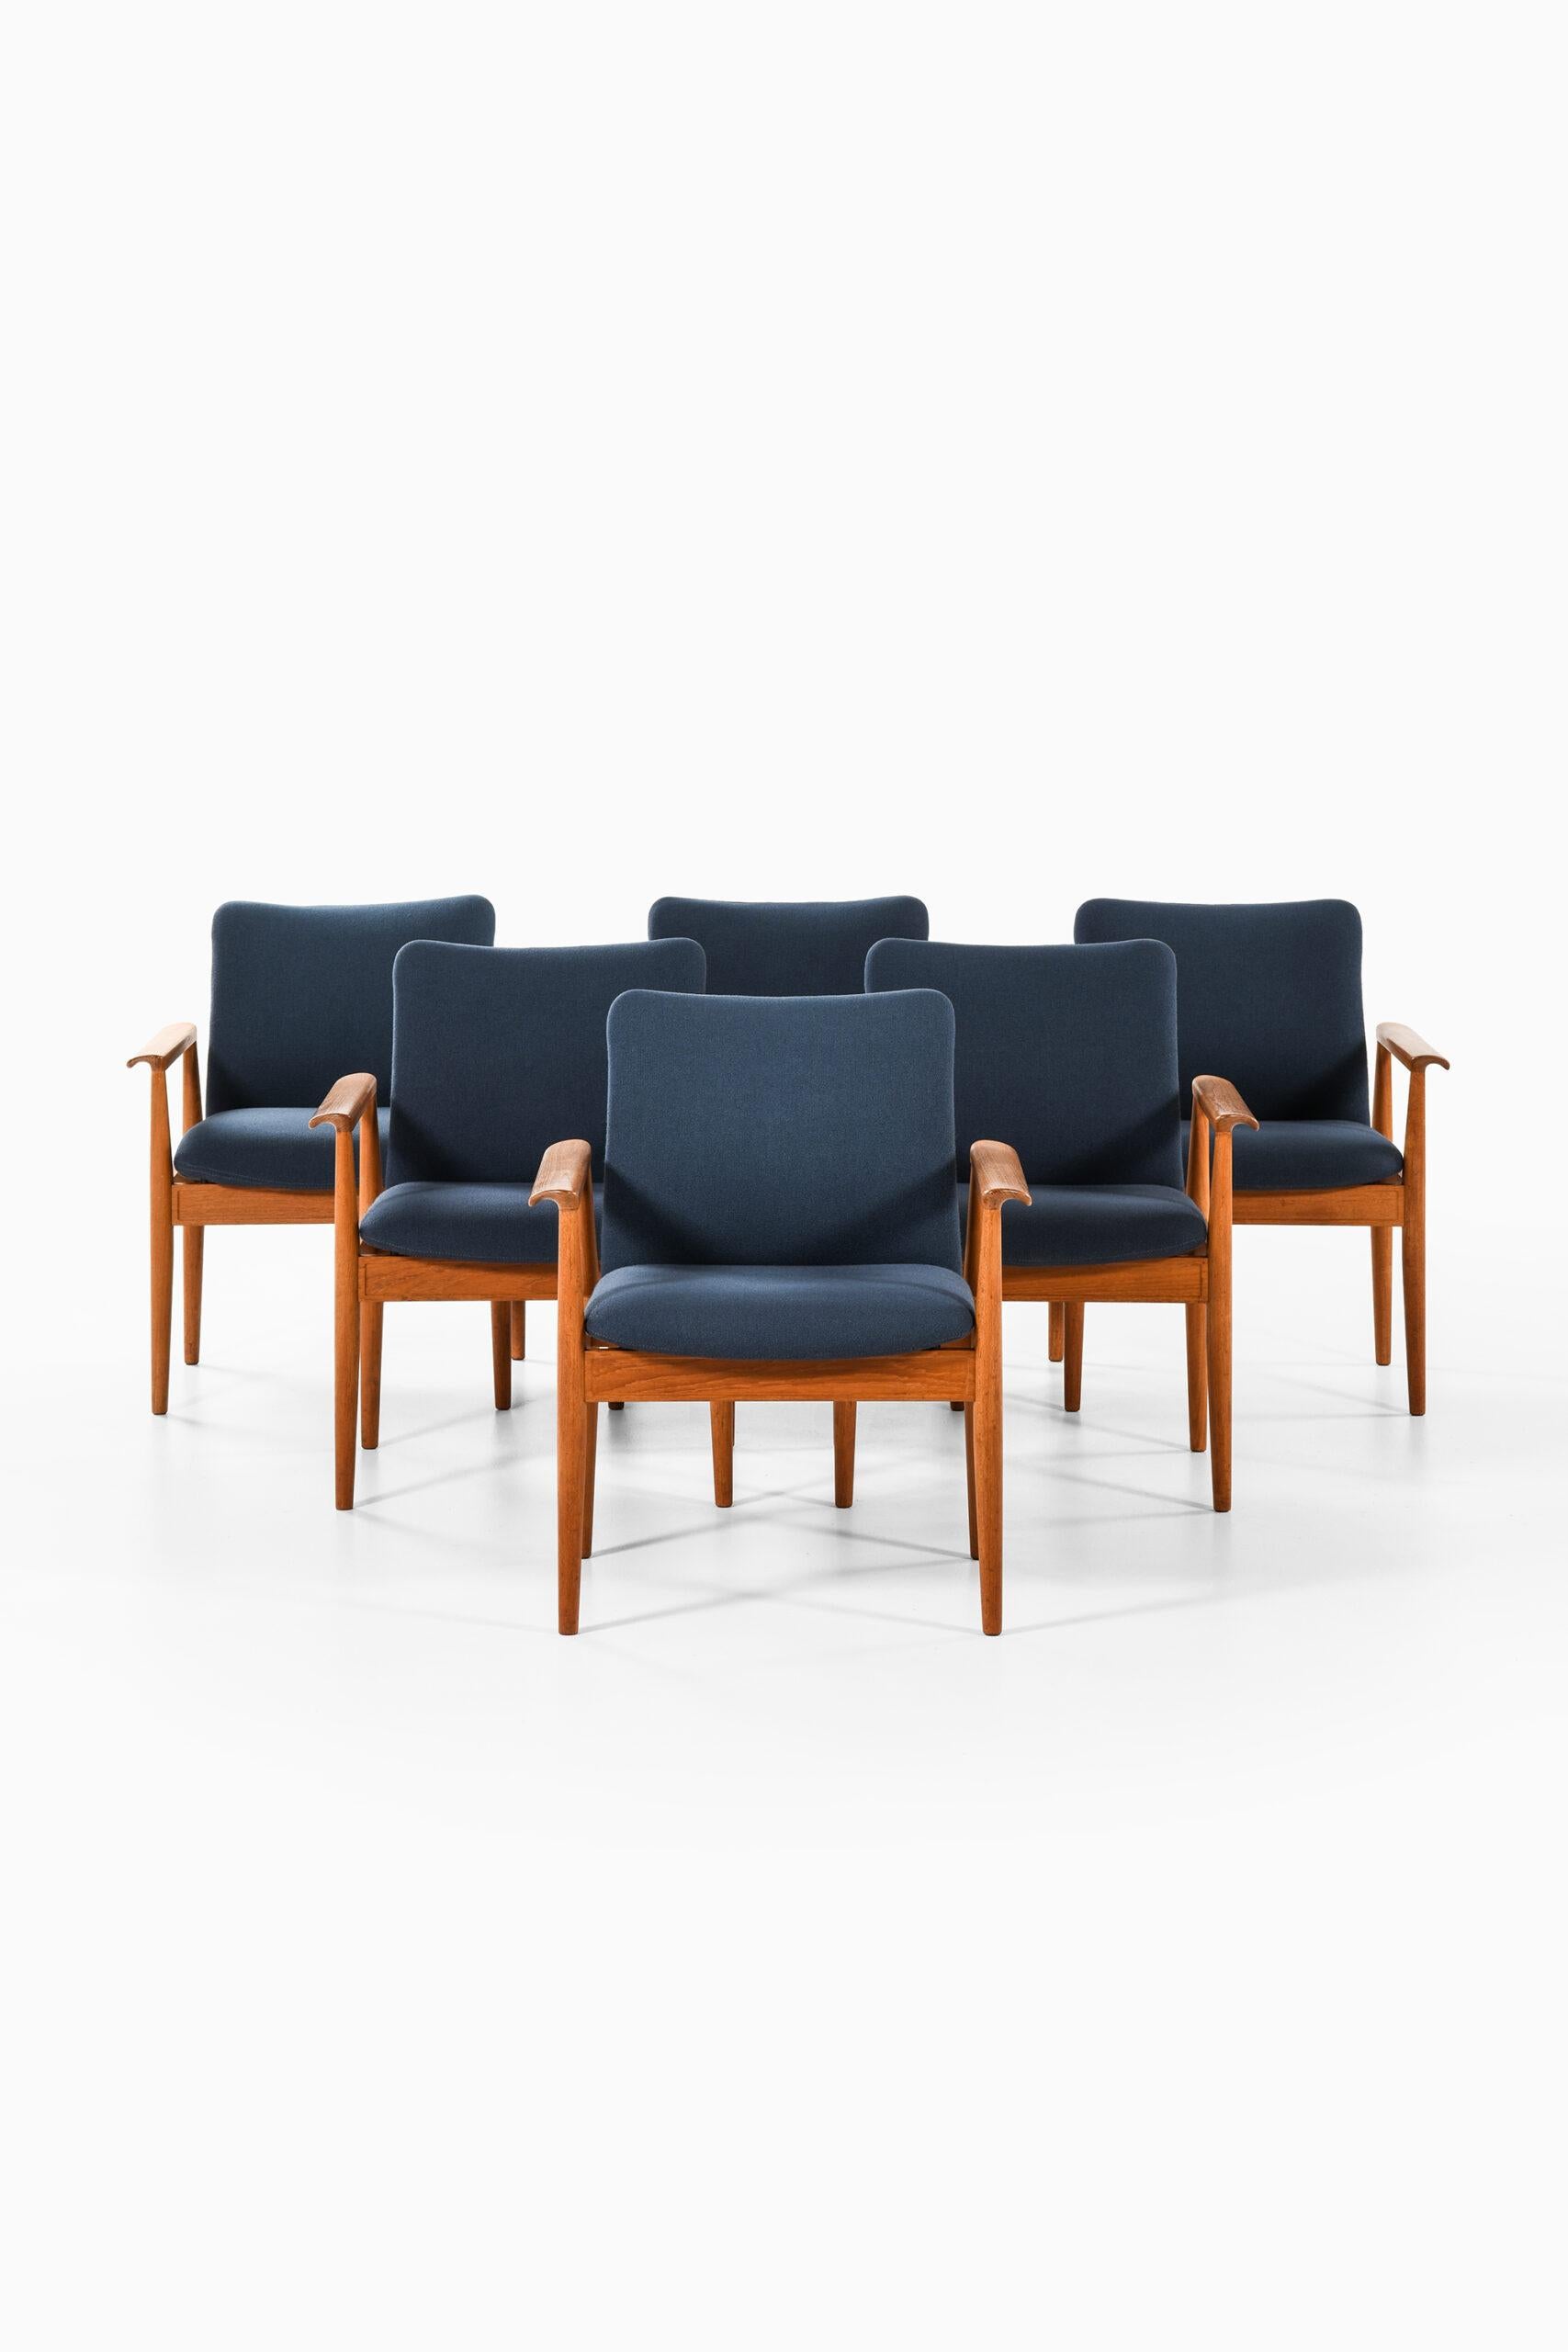 Seltener Satz von 6 Sesseln Modell FD 209 / Diplomat Stühle entworfen von Finn Juhl. Produziert von Cado in Dänemark.